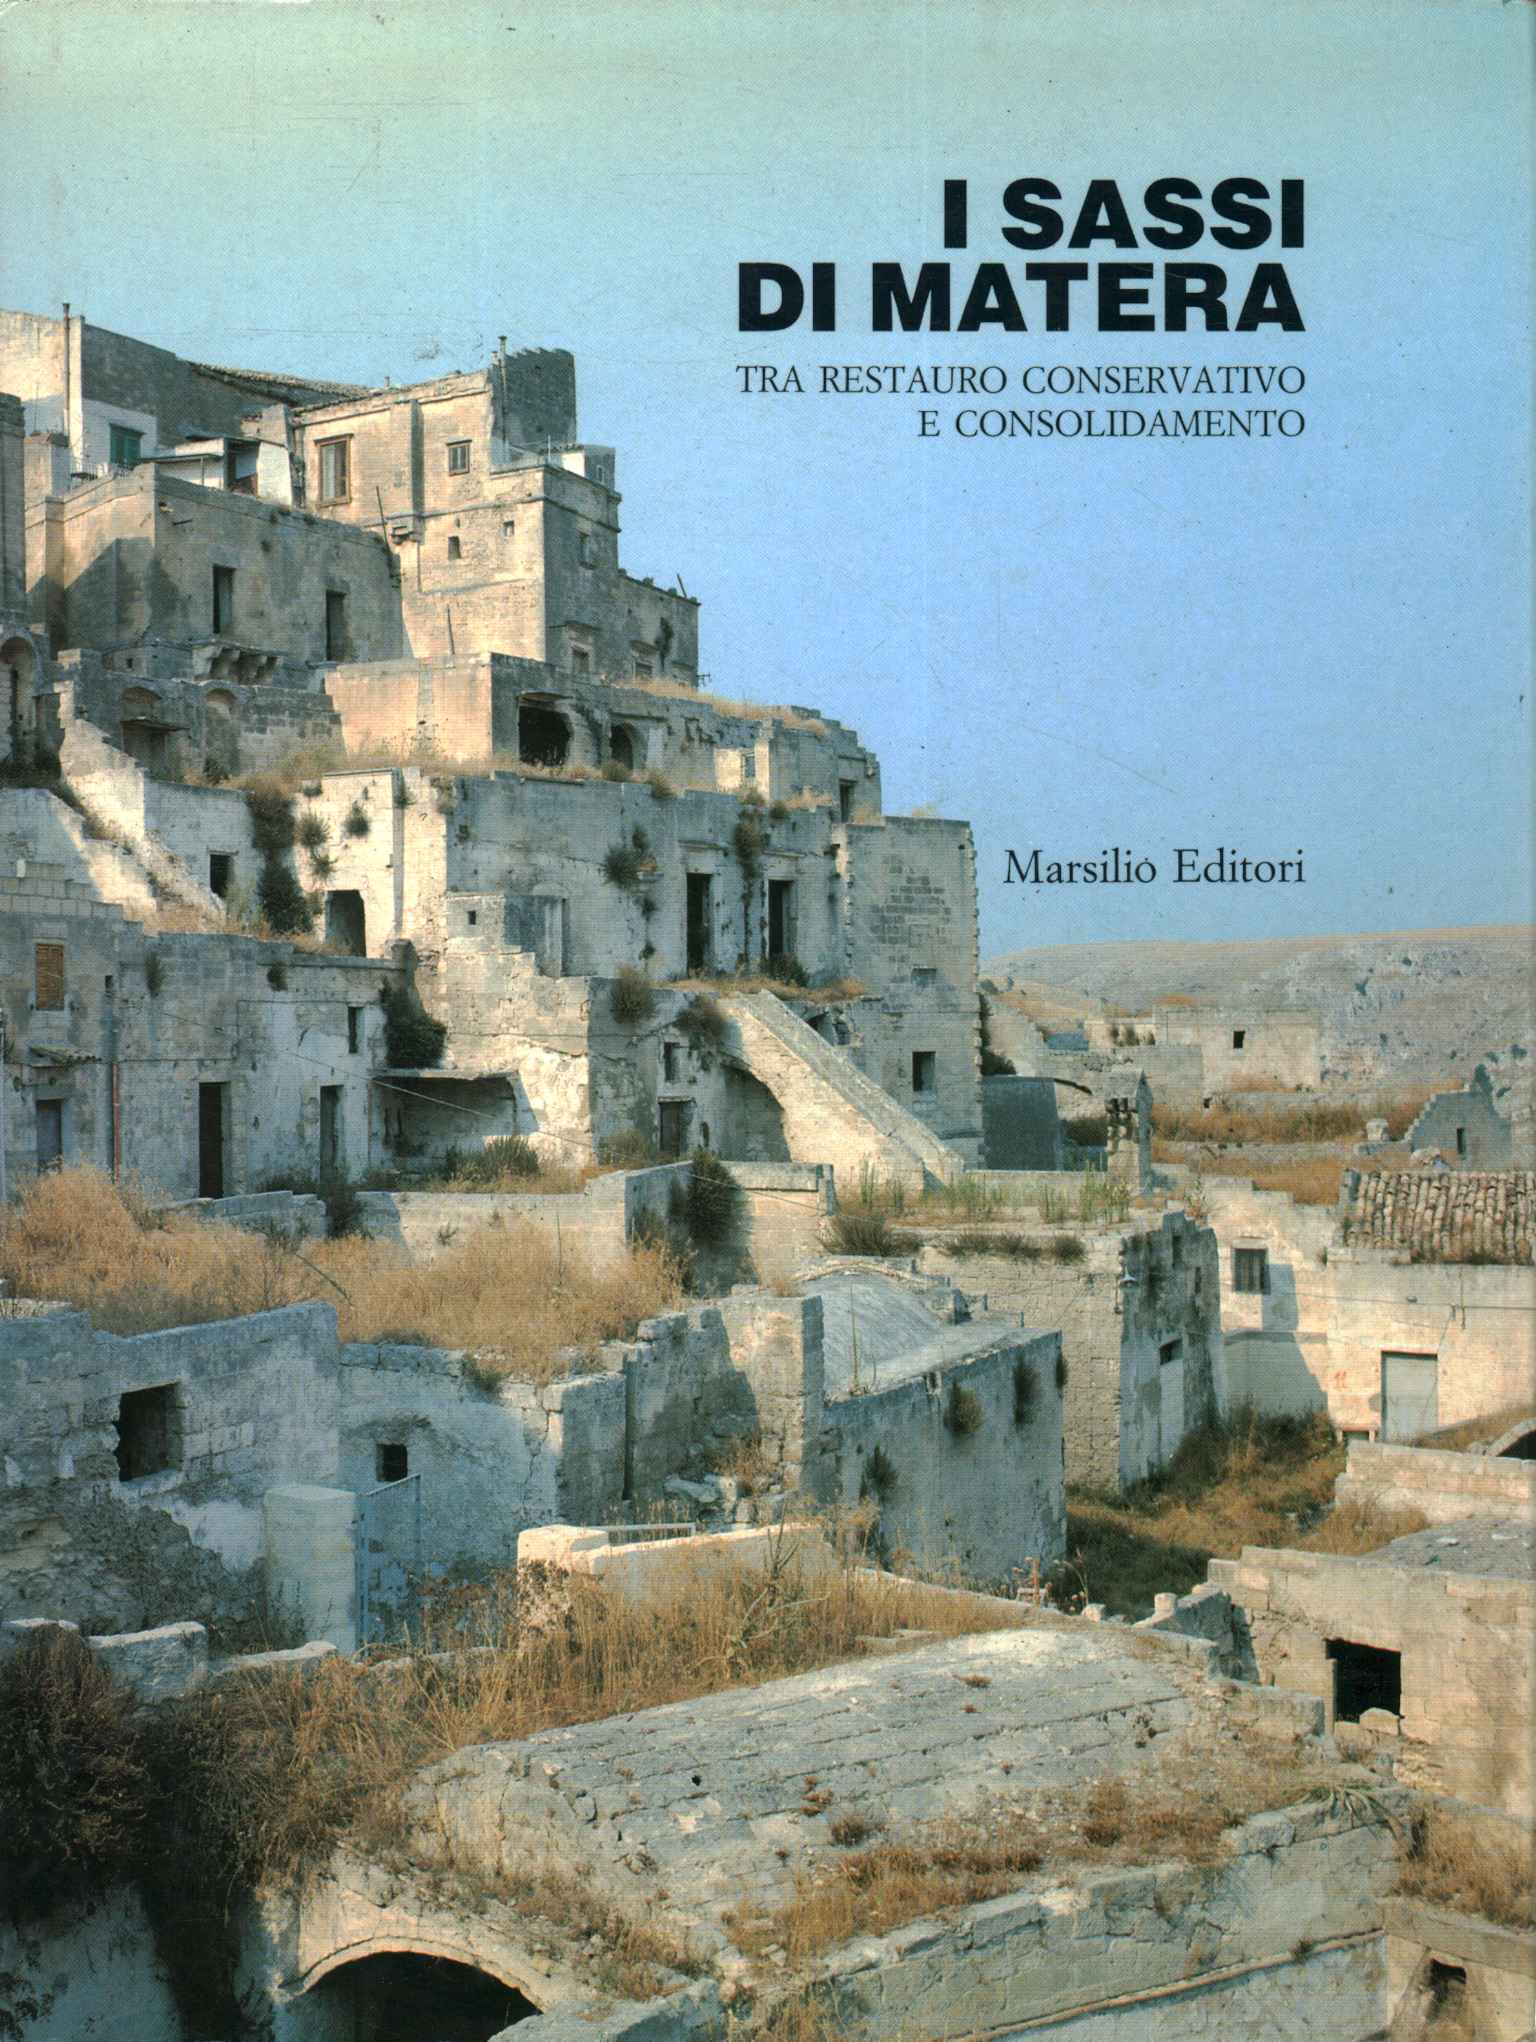 Die Steine von Matera